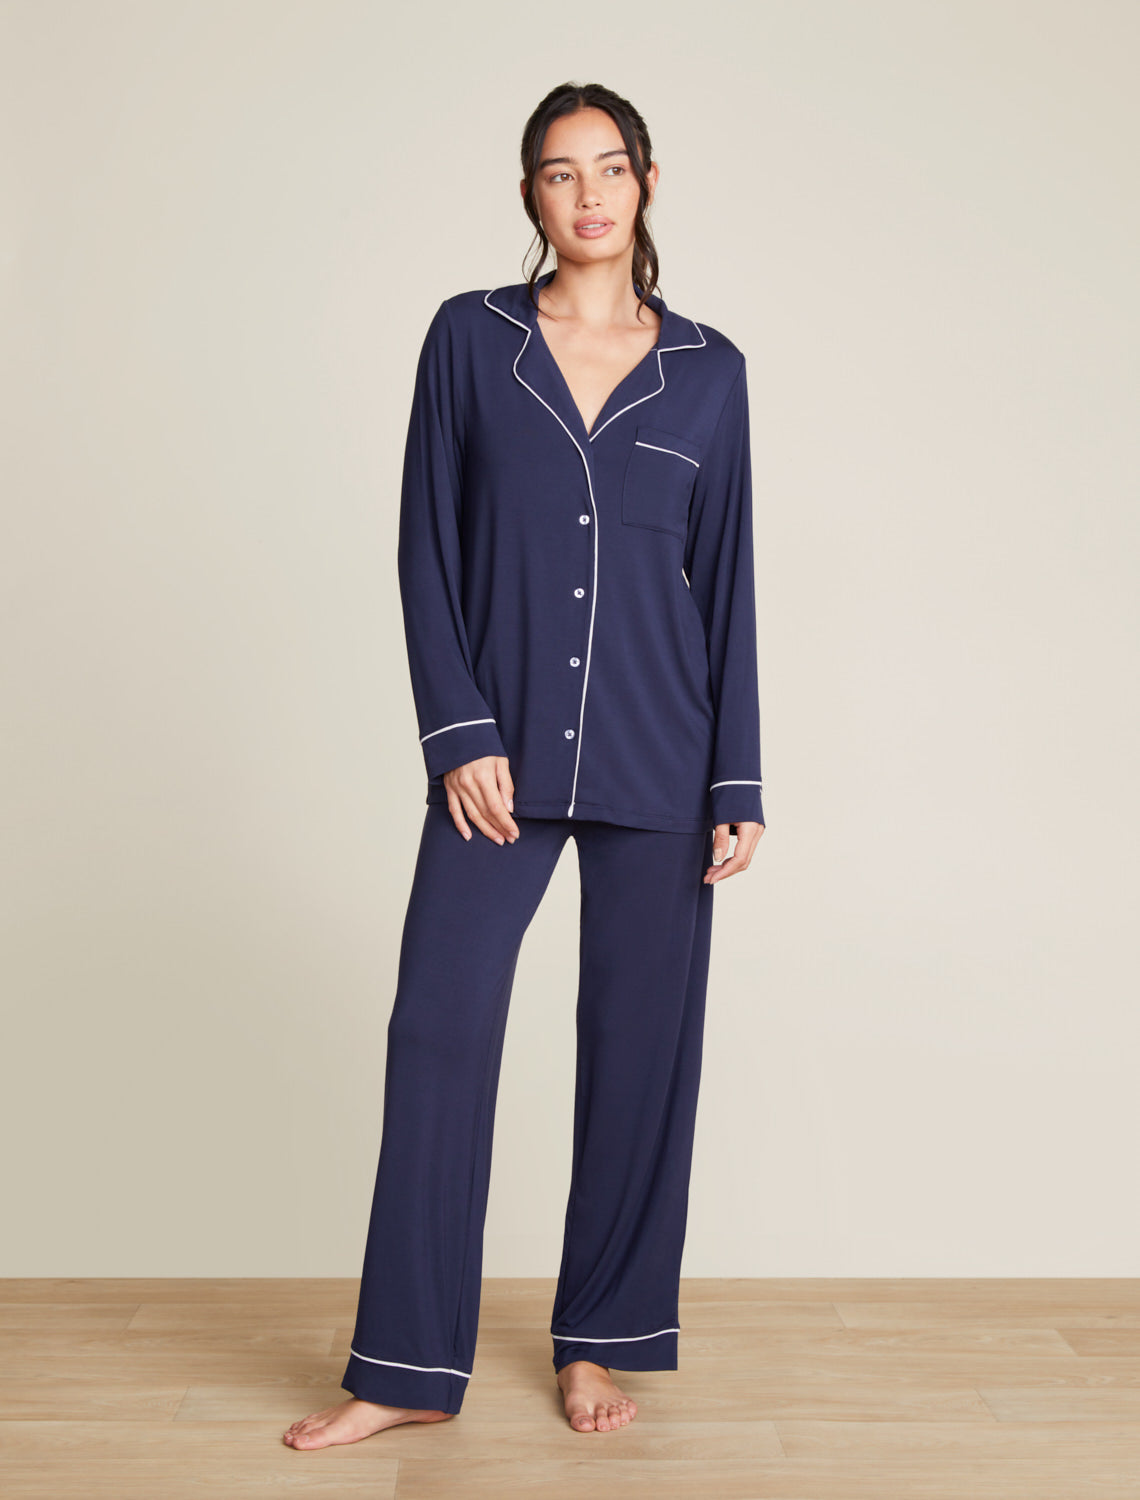 Shop our made-to-match womens modal Pajamas!